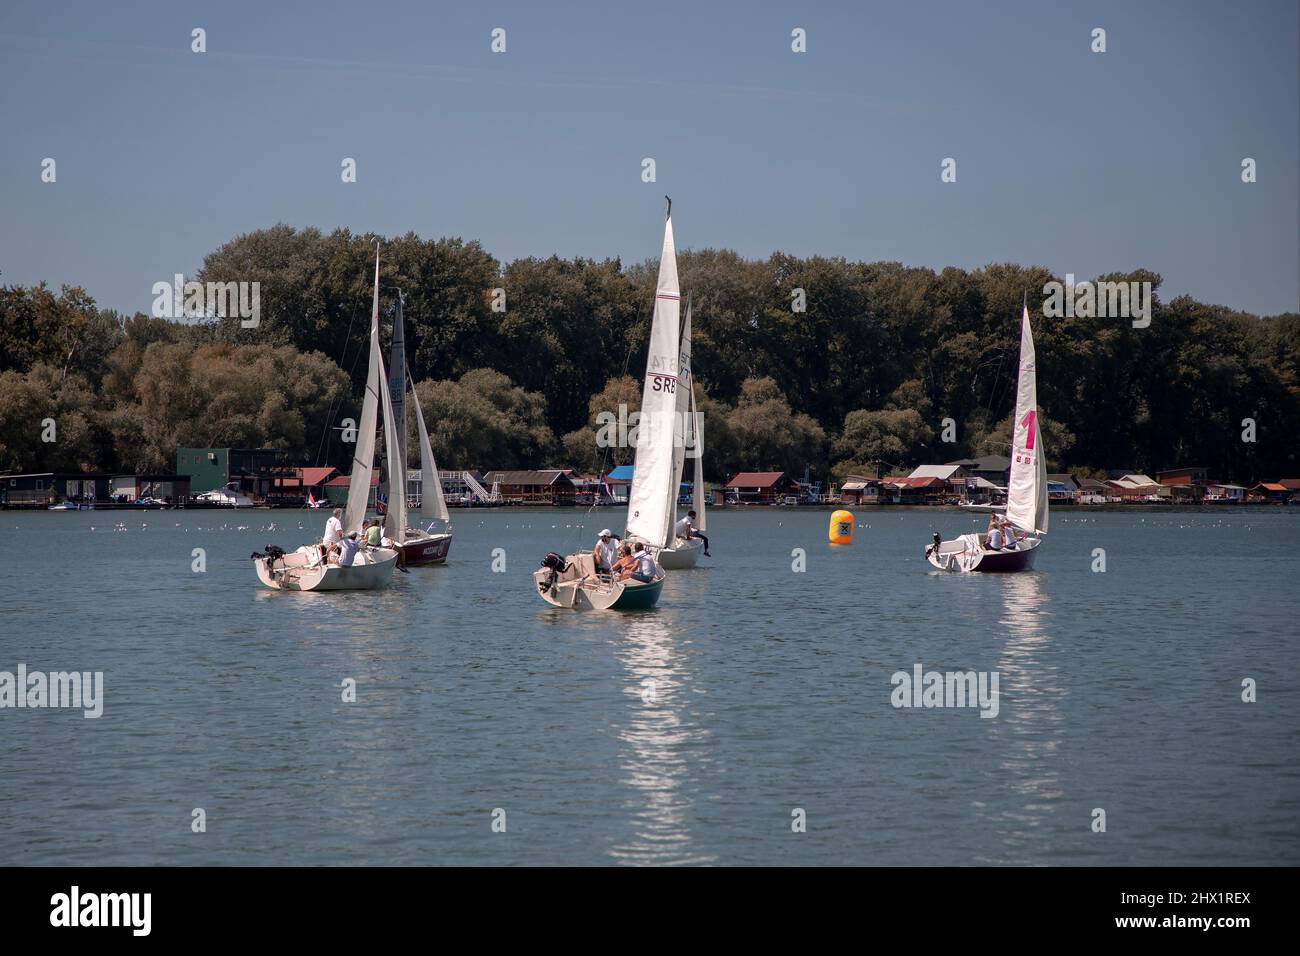 Belgrade, Serbia, Aug 18, 2019: Three-person teams competing in Micro Class sailing regatta on Sava River Stock Photo